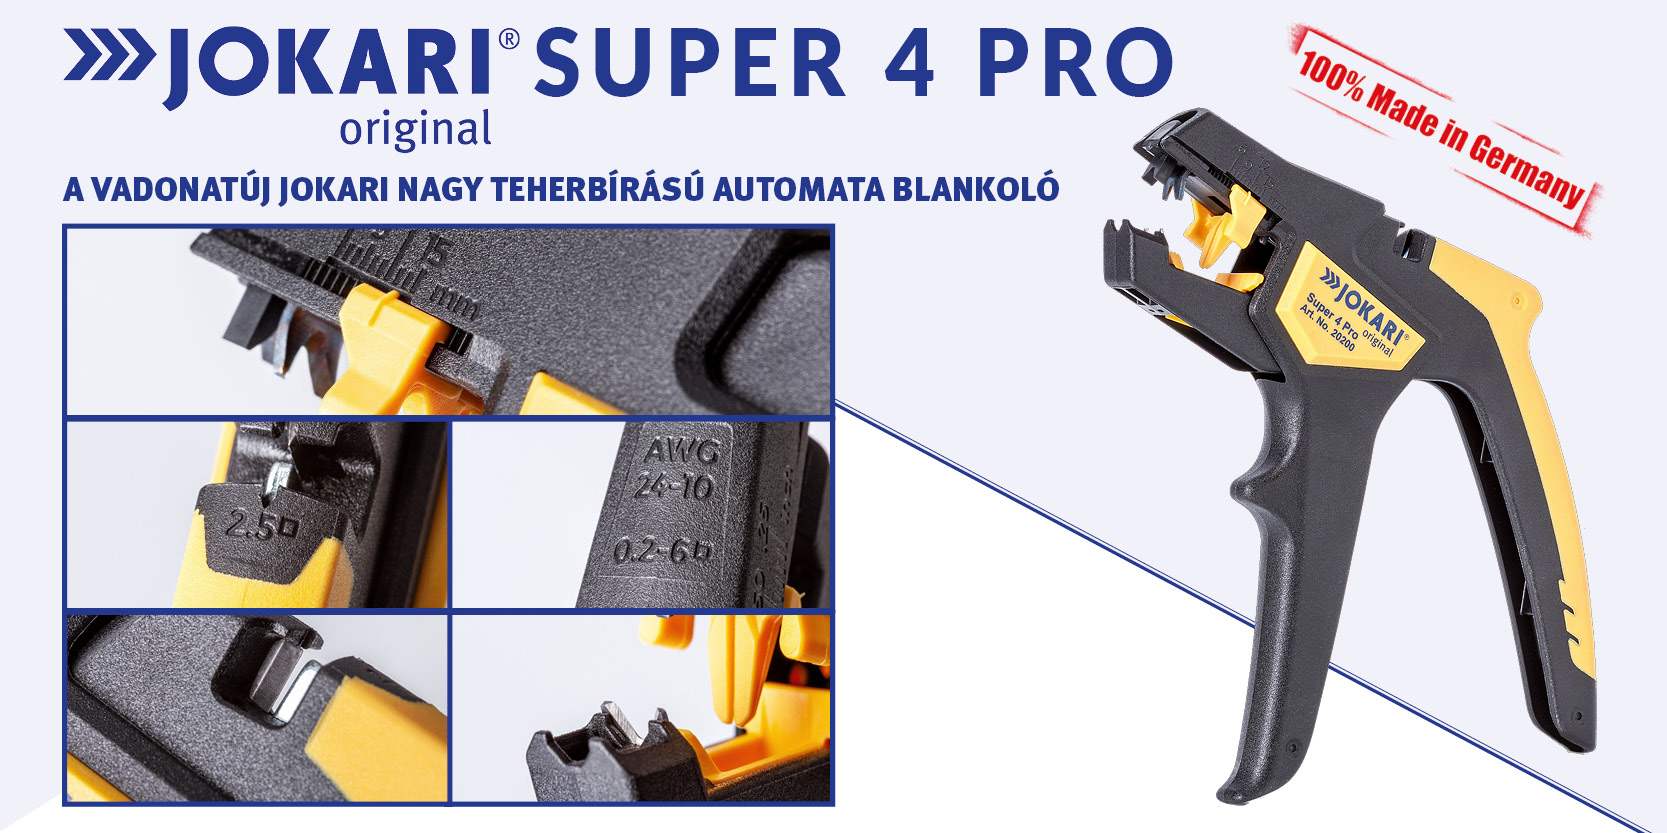 Jokari Super 4 Pro automata blankoló